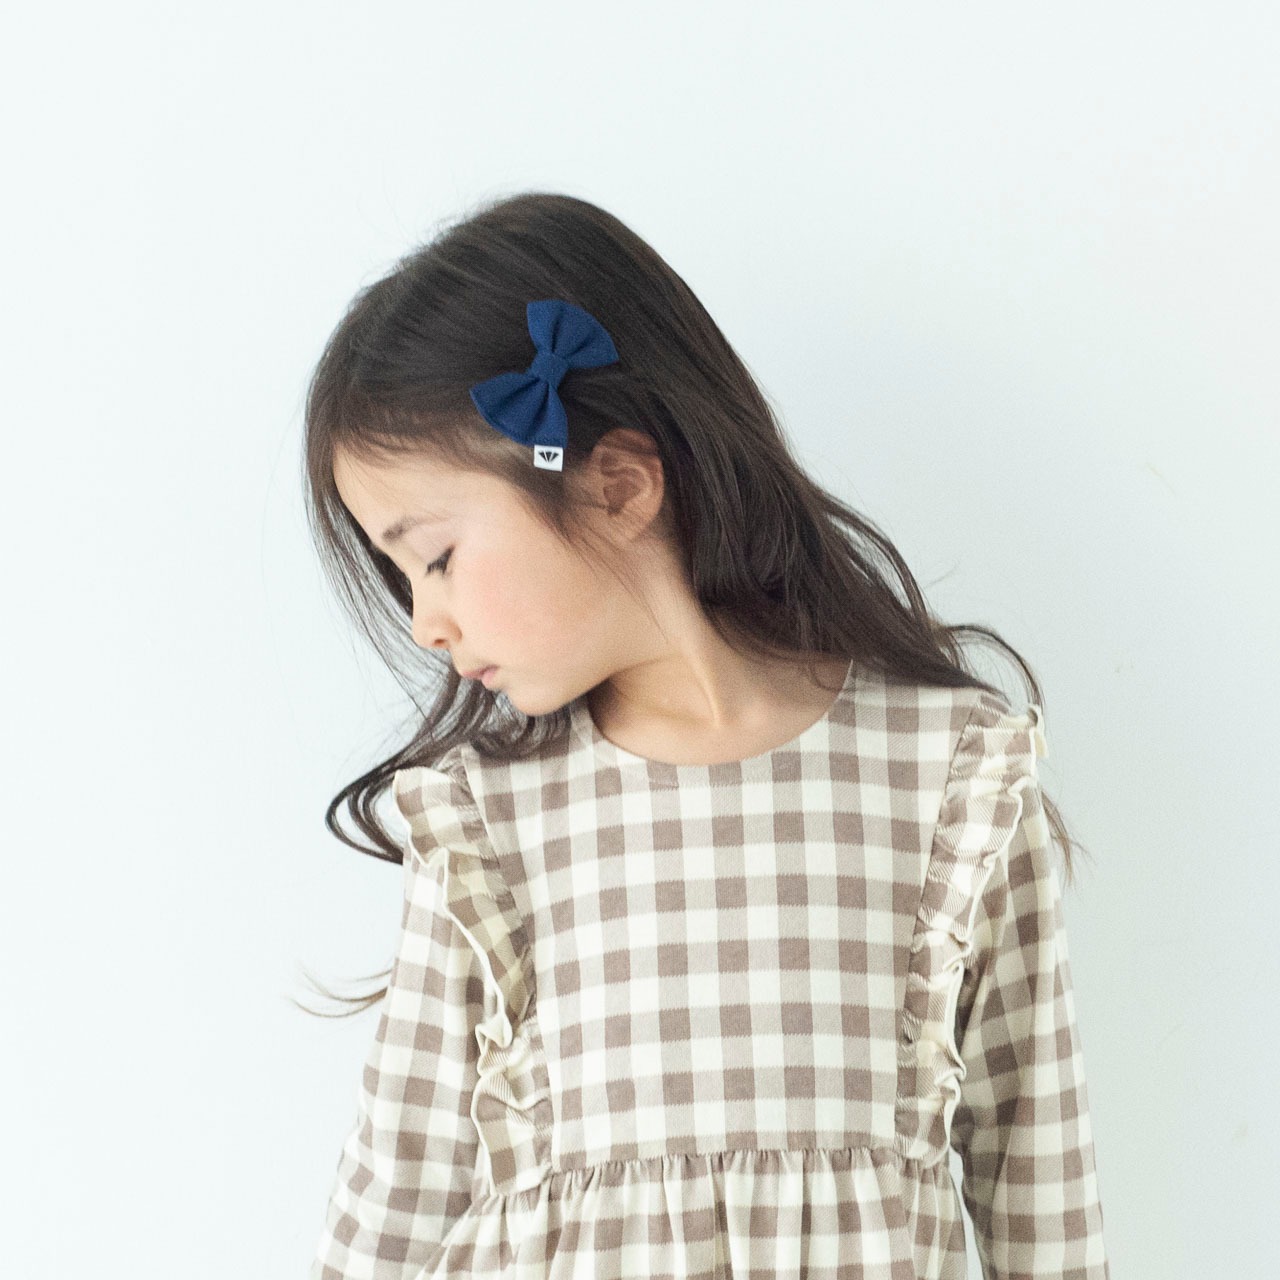 リボンピン 【ネイビー】ブランド 子供 ヘアアクセサリー 女の子 男の子 日本製 キッズ ギフト